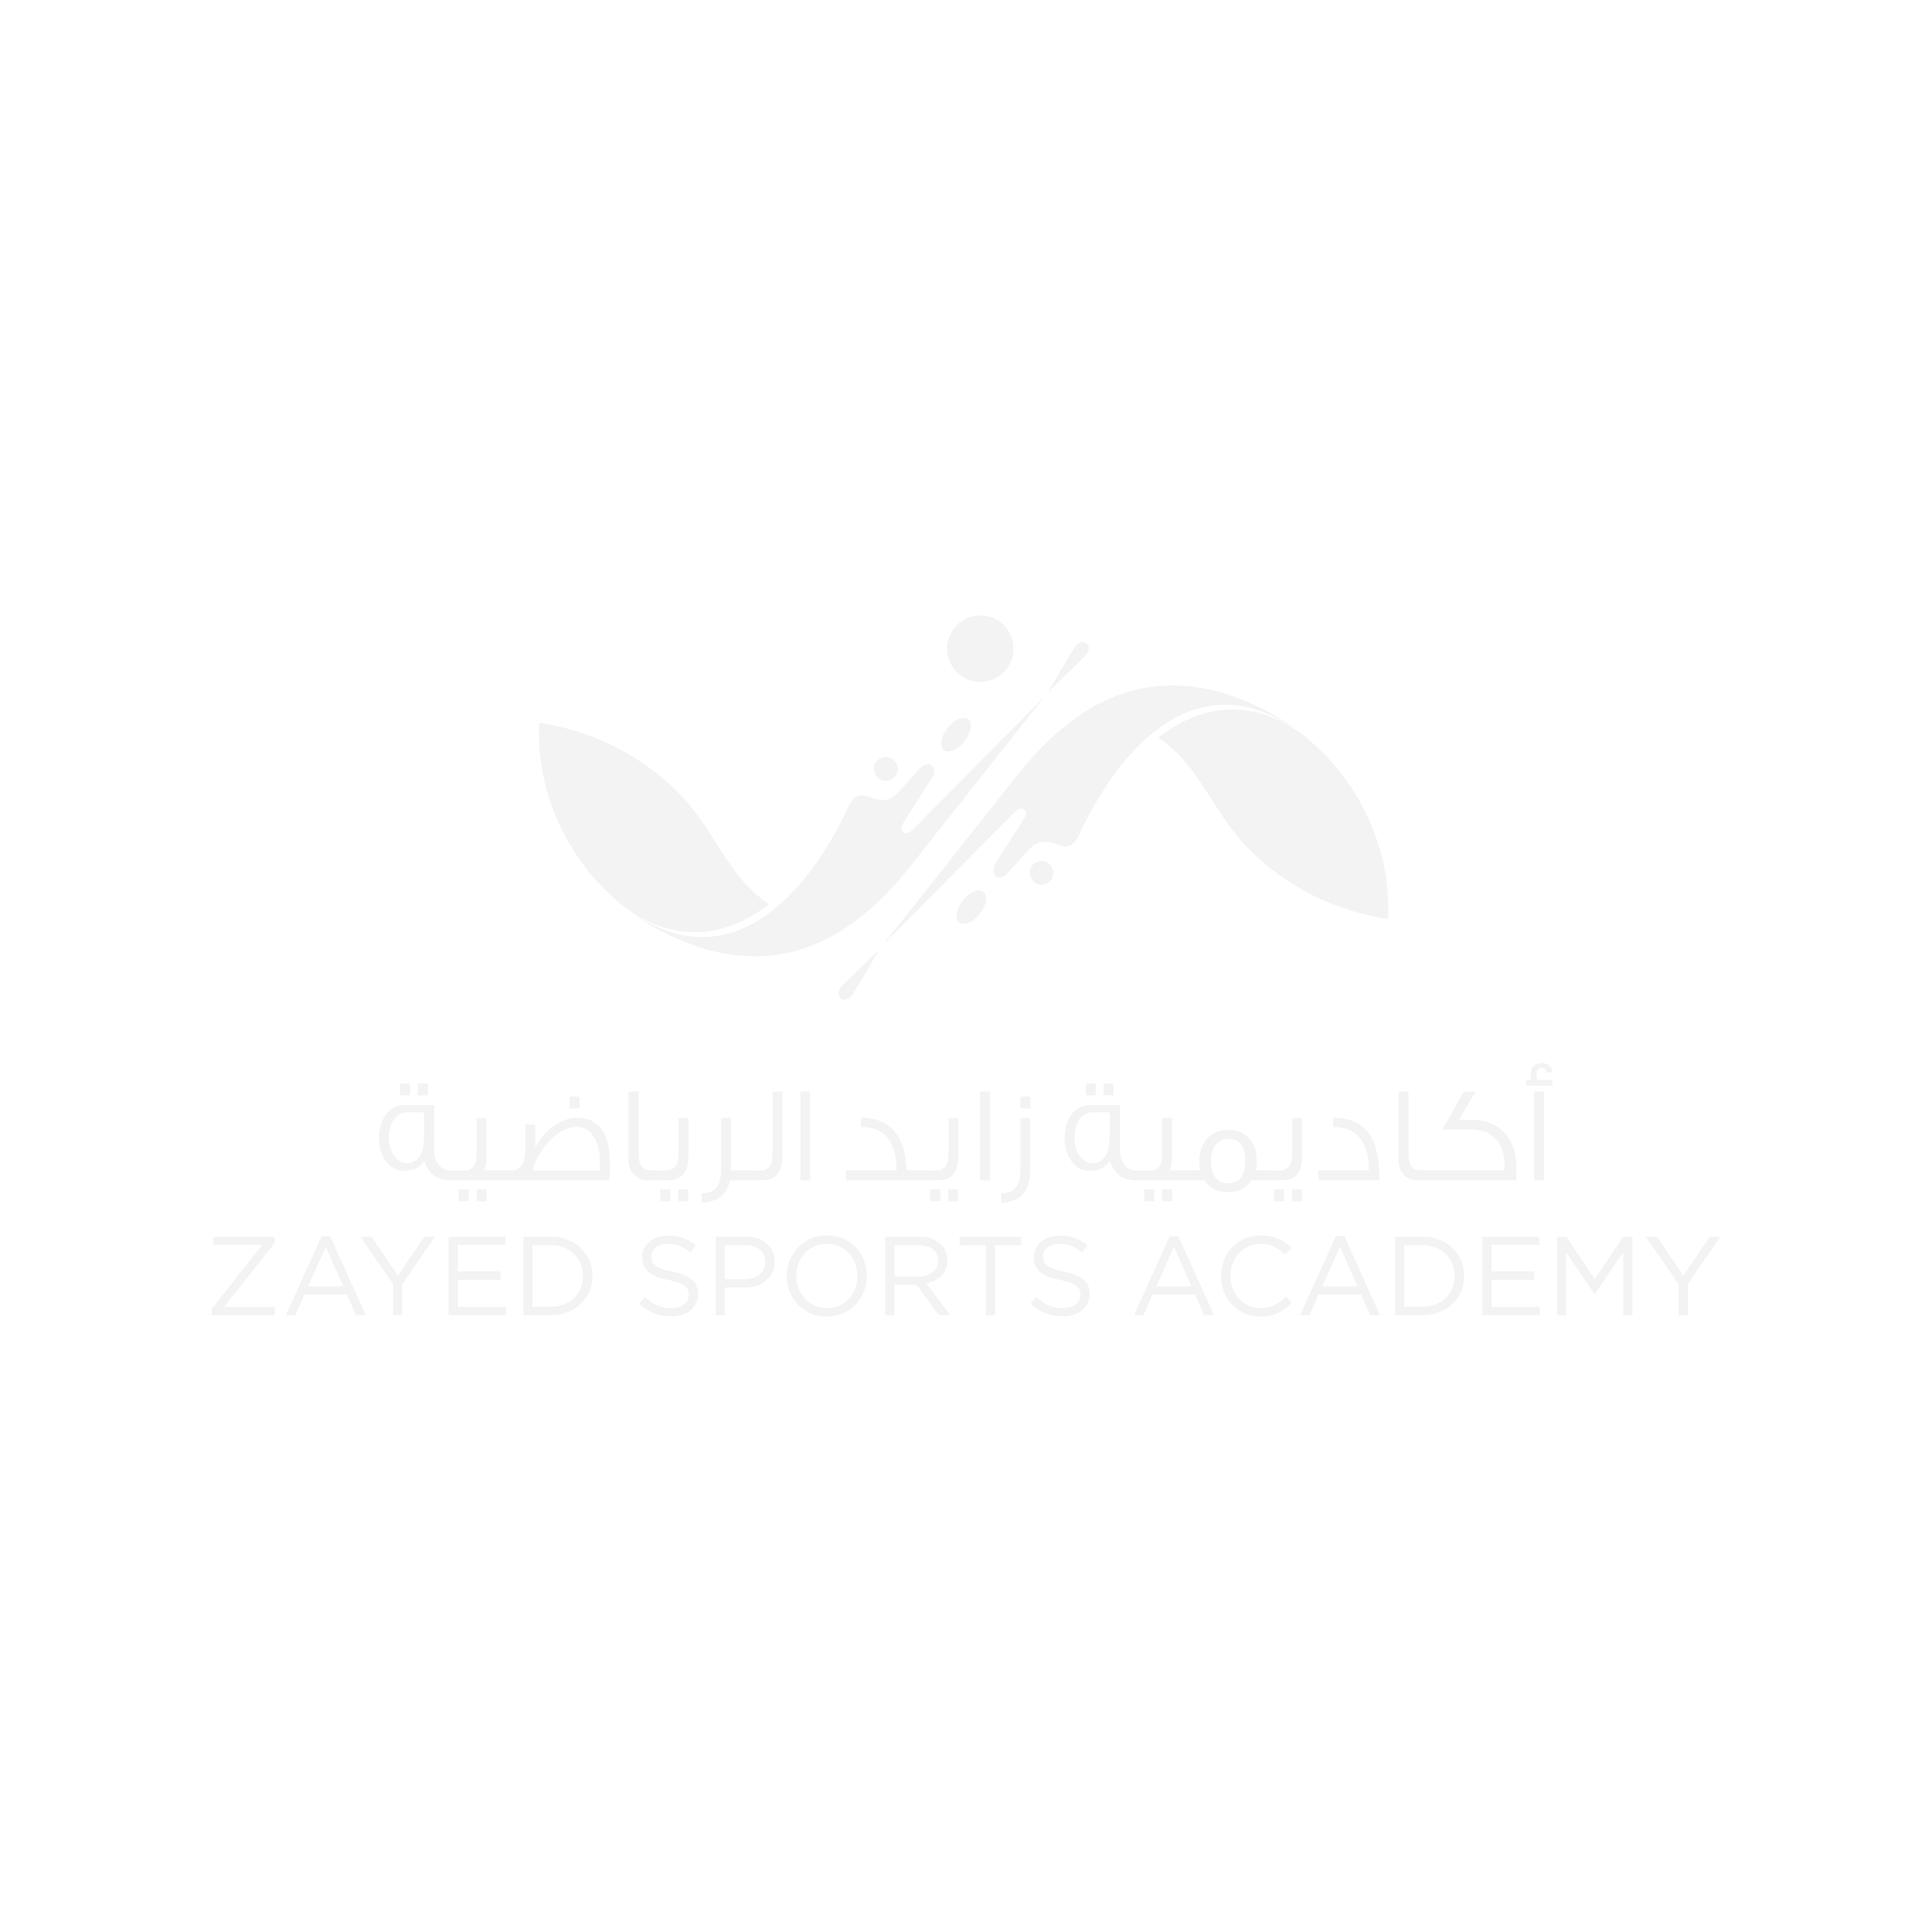 Zayed Sports Academy Logo